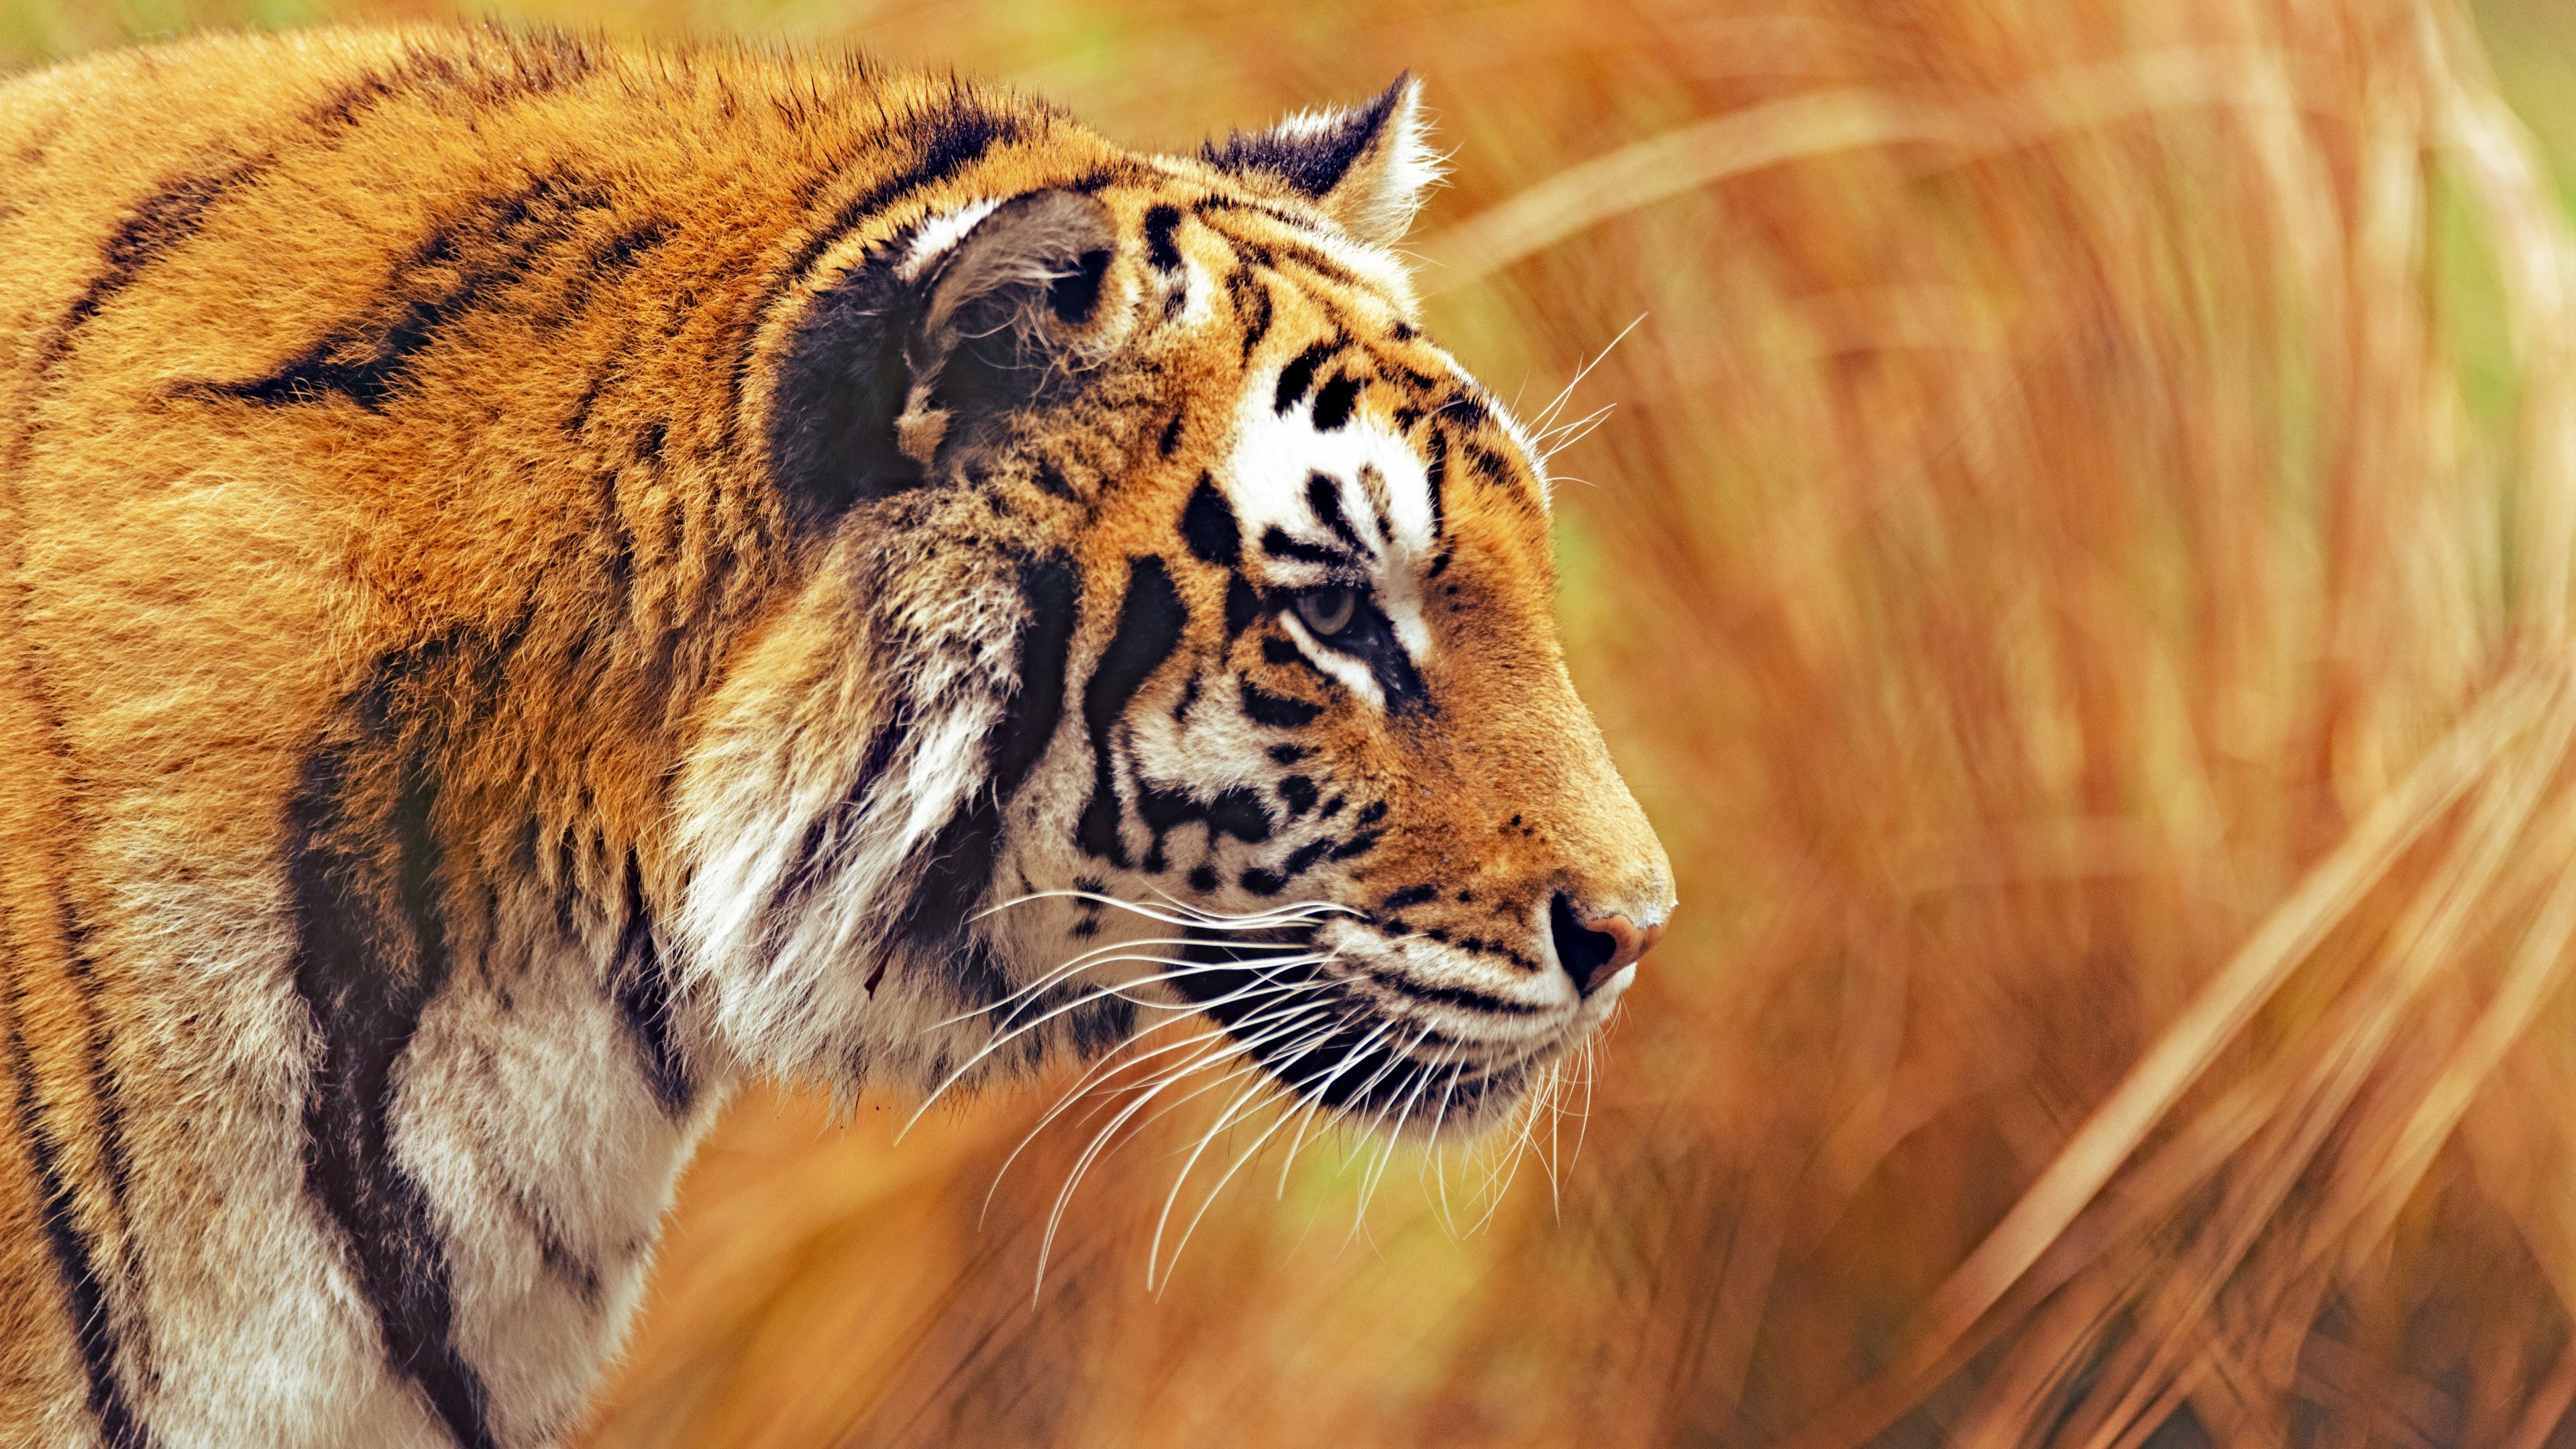 os x tiger wallpaper,tiger,wildlife,mammal,terrestrial animal,vertebrate